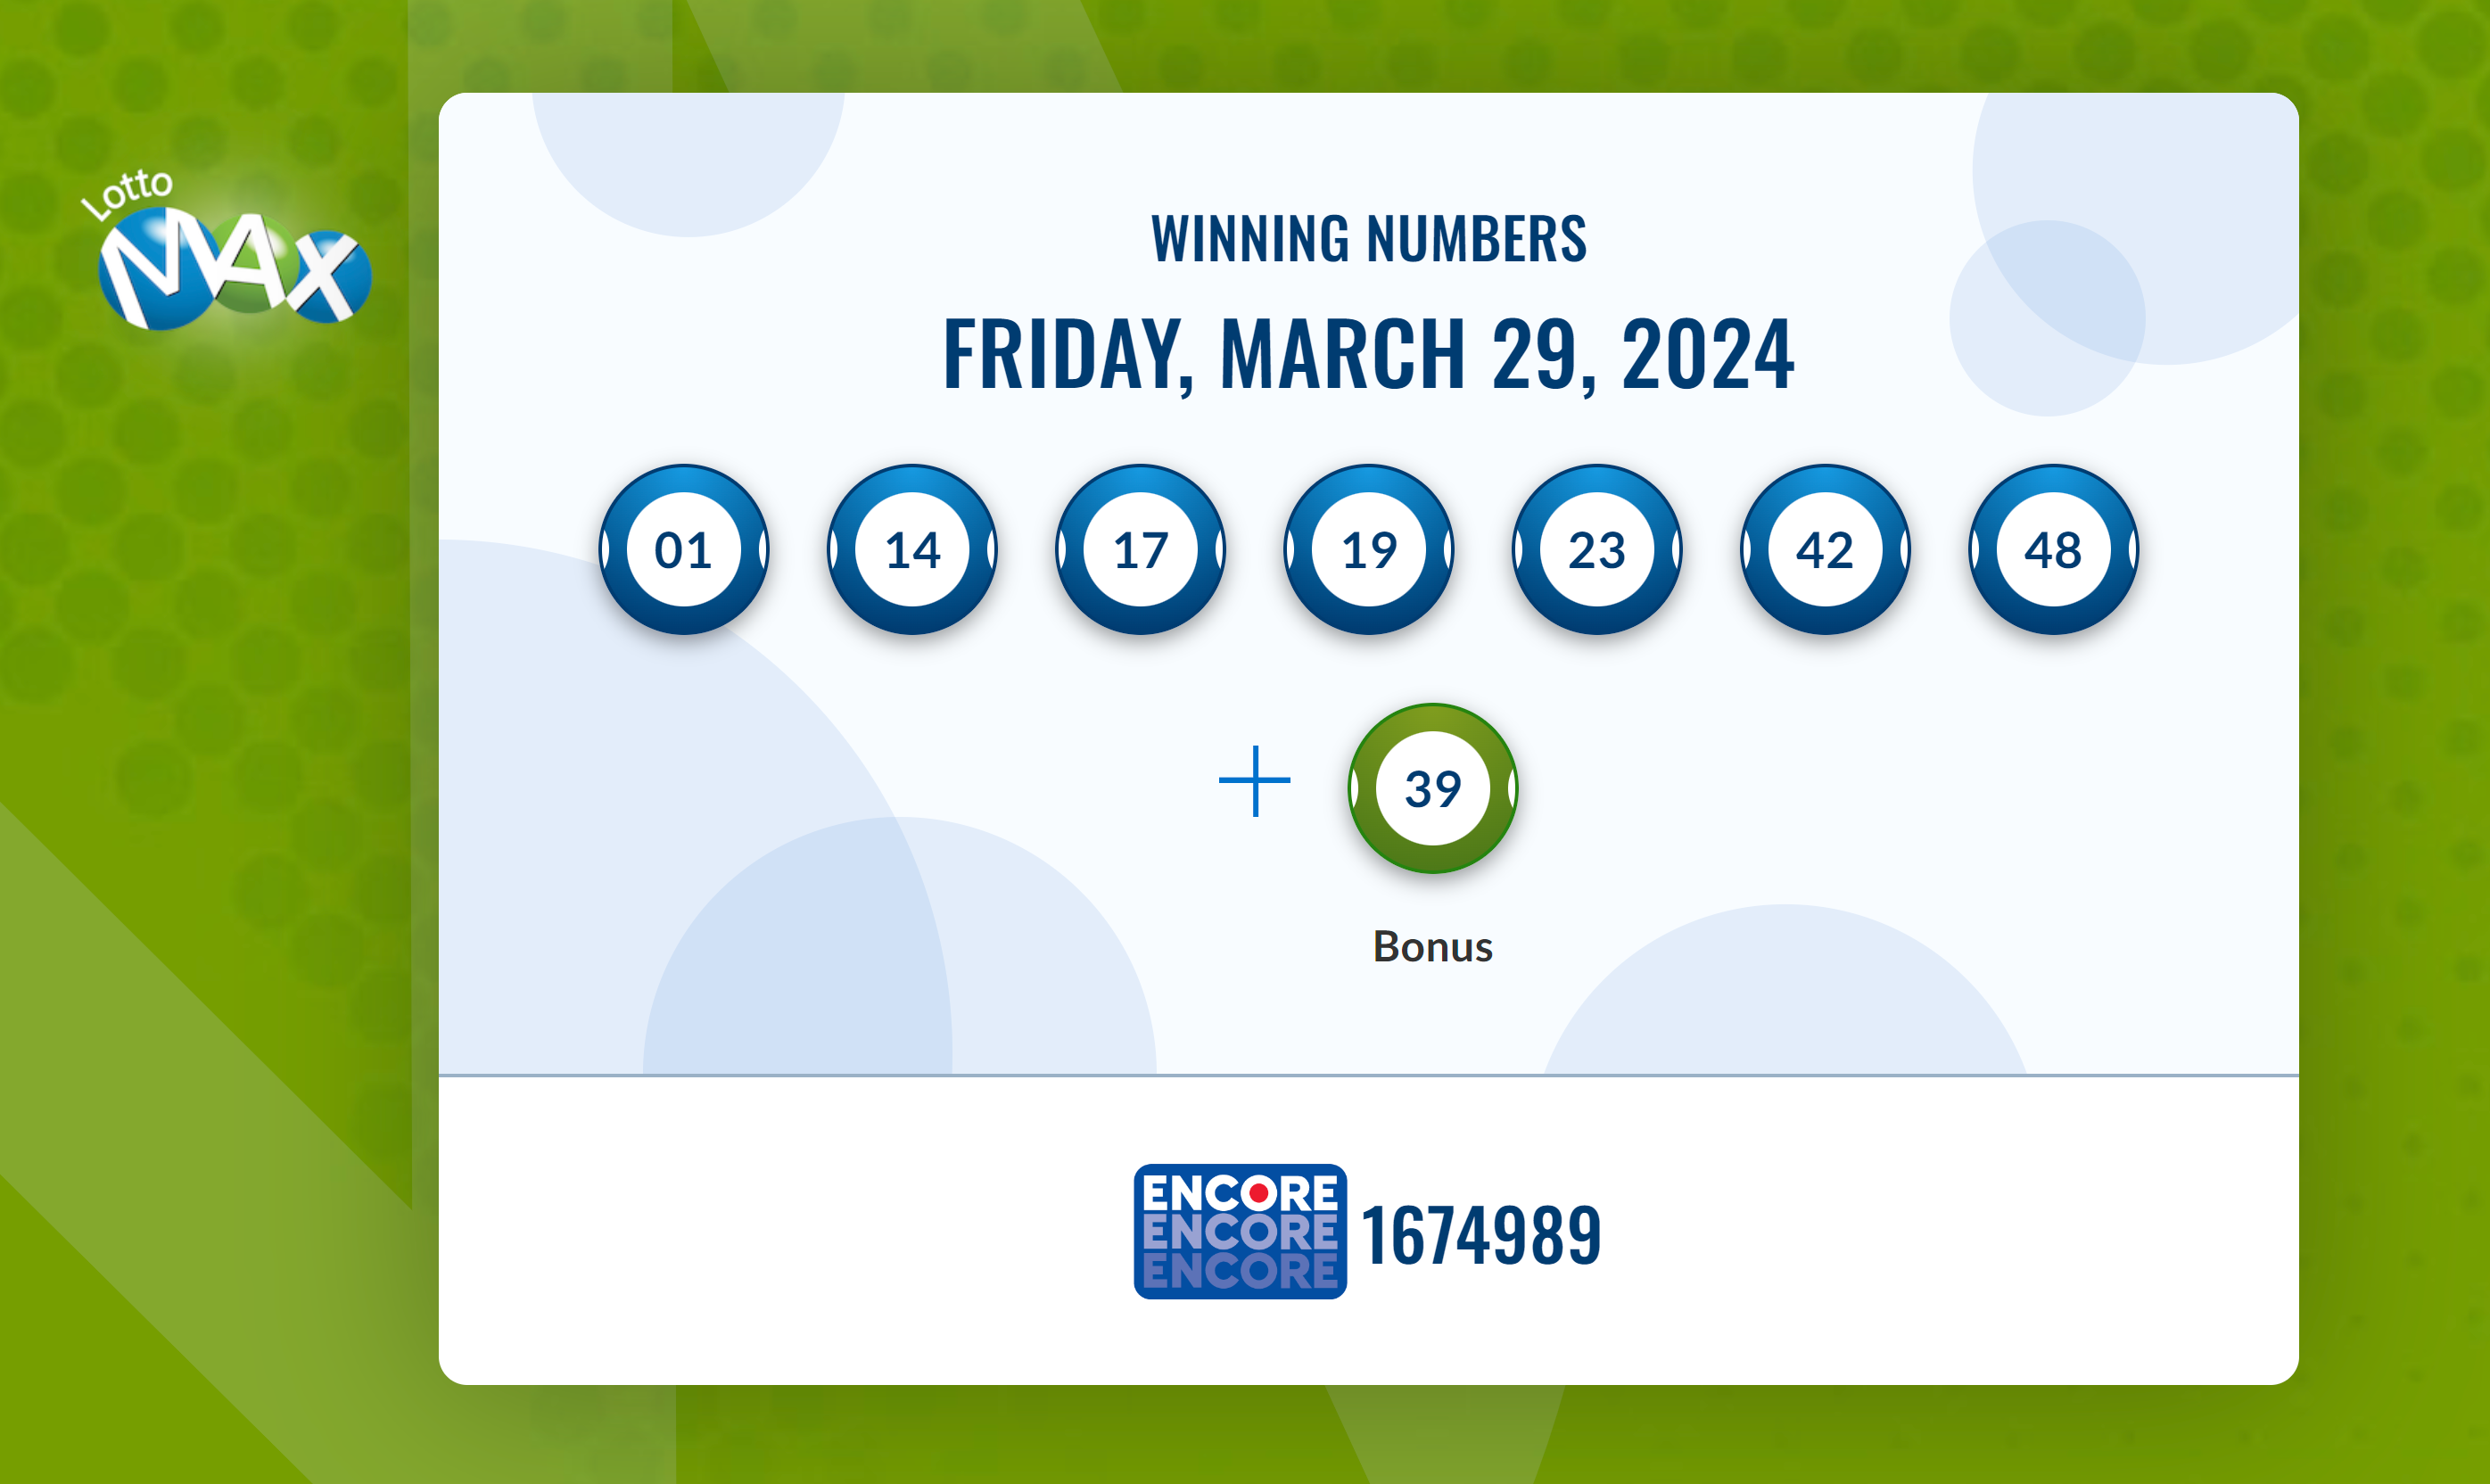 نتایج لاتاری Lotto Max کانادا (قرعه کشی جمعه ۲۹ مارچ) اعلام شد.